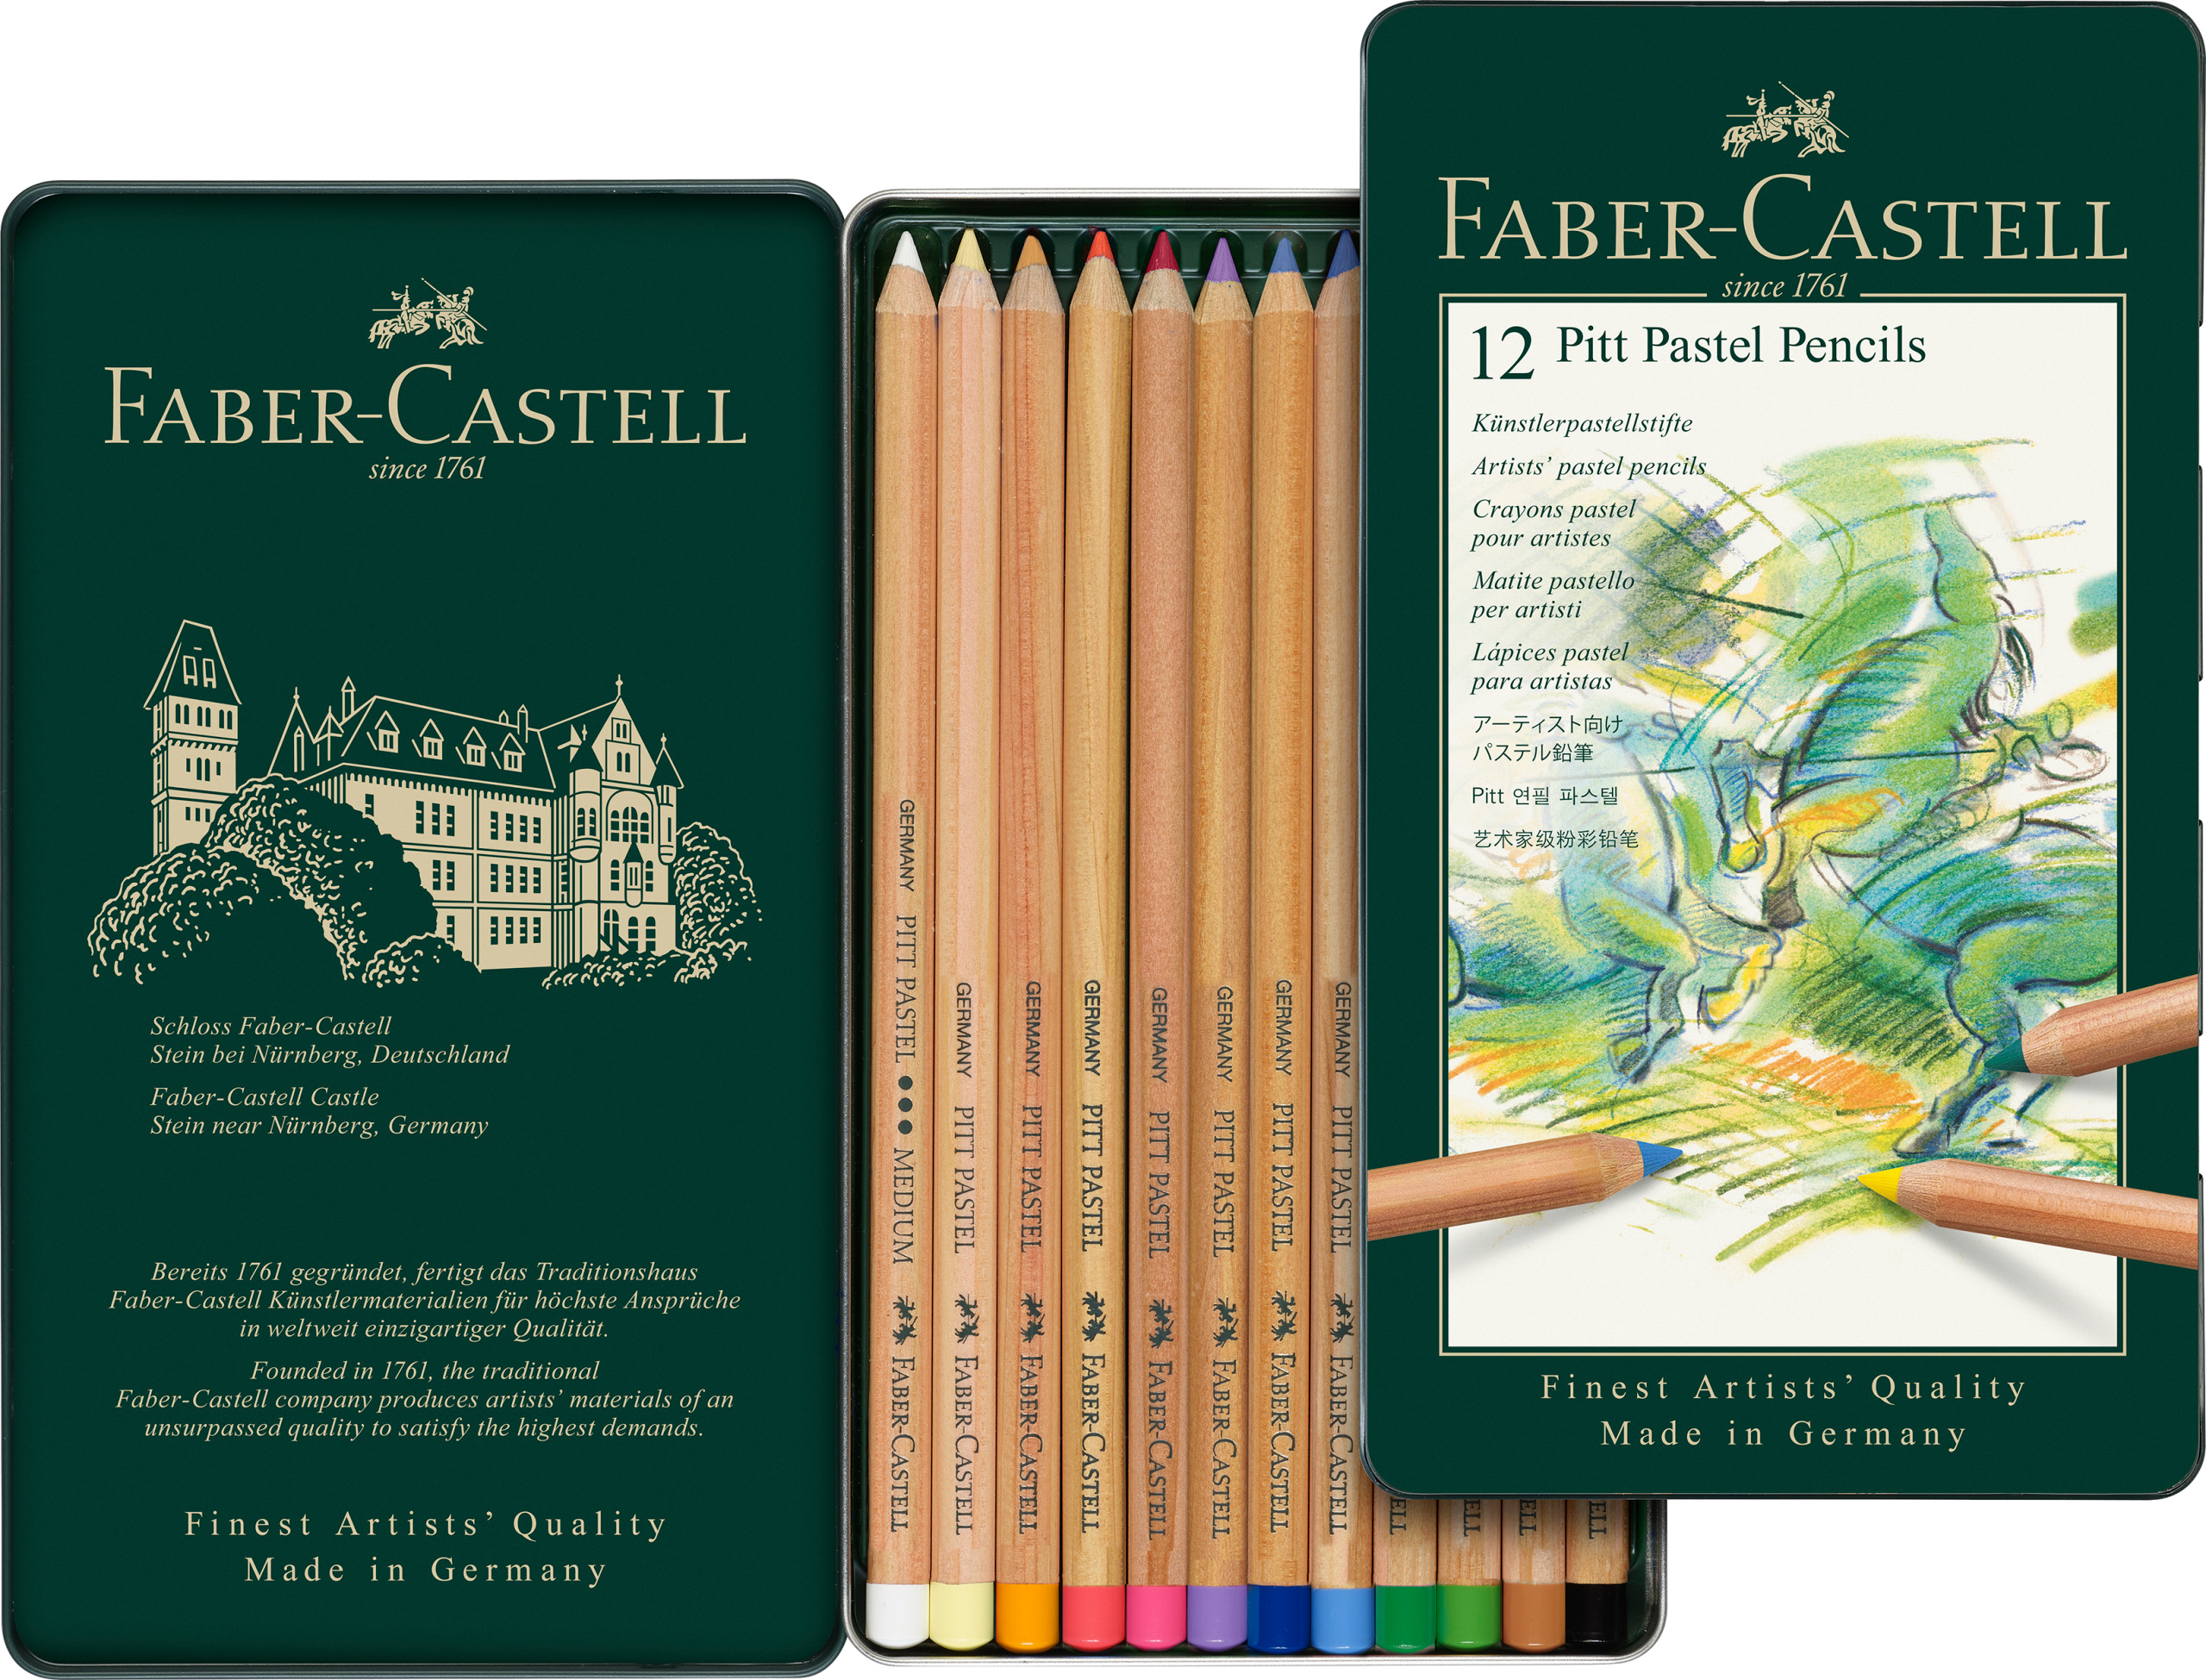 FABER-CASTELL Crayon 112112 boîte metal de 12 pce